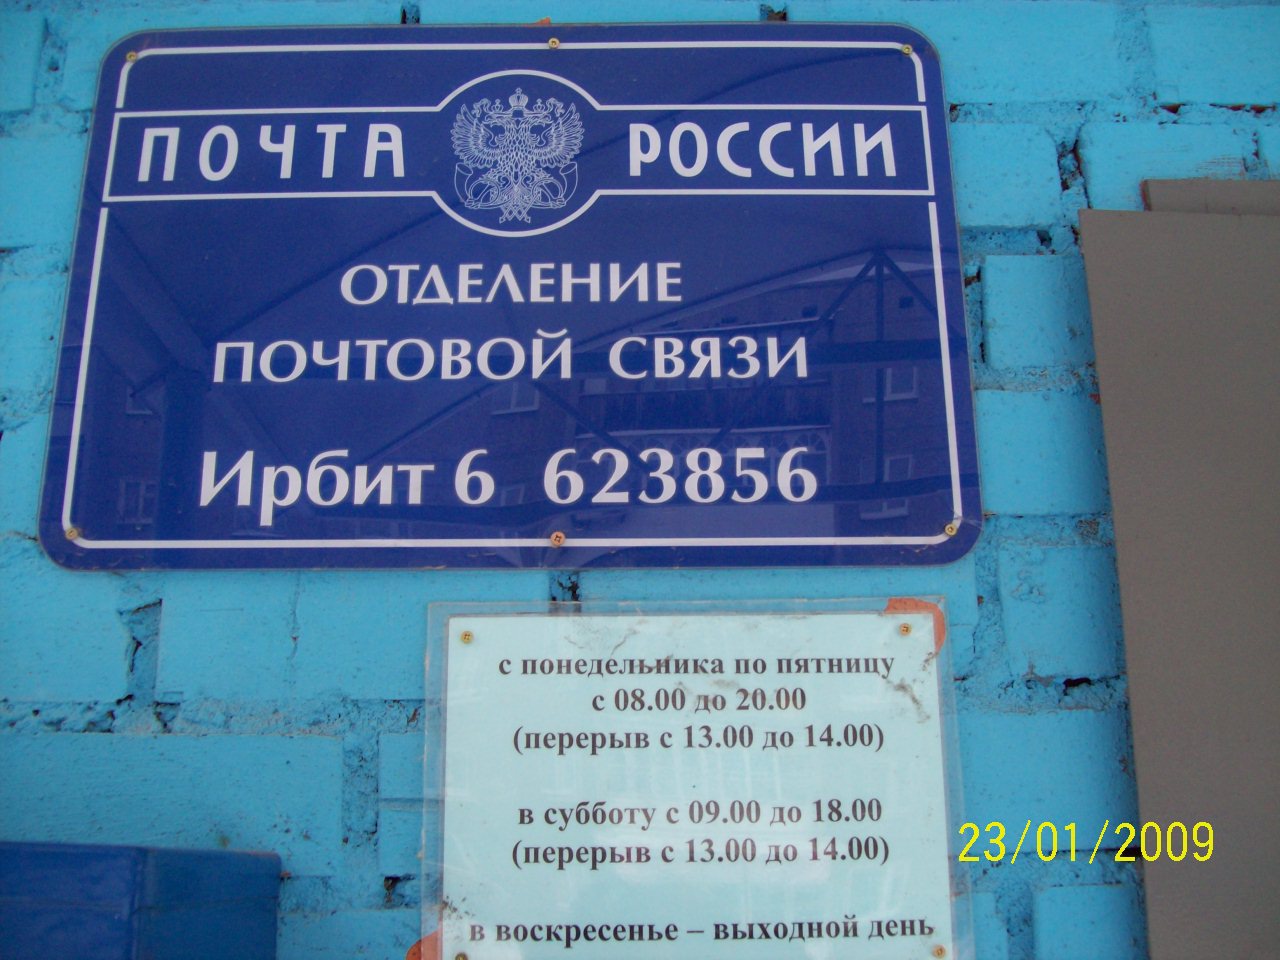 ВХОД, отделение почтовой связи 623856, Свердловская обл., Ирбит